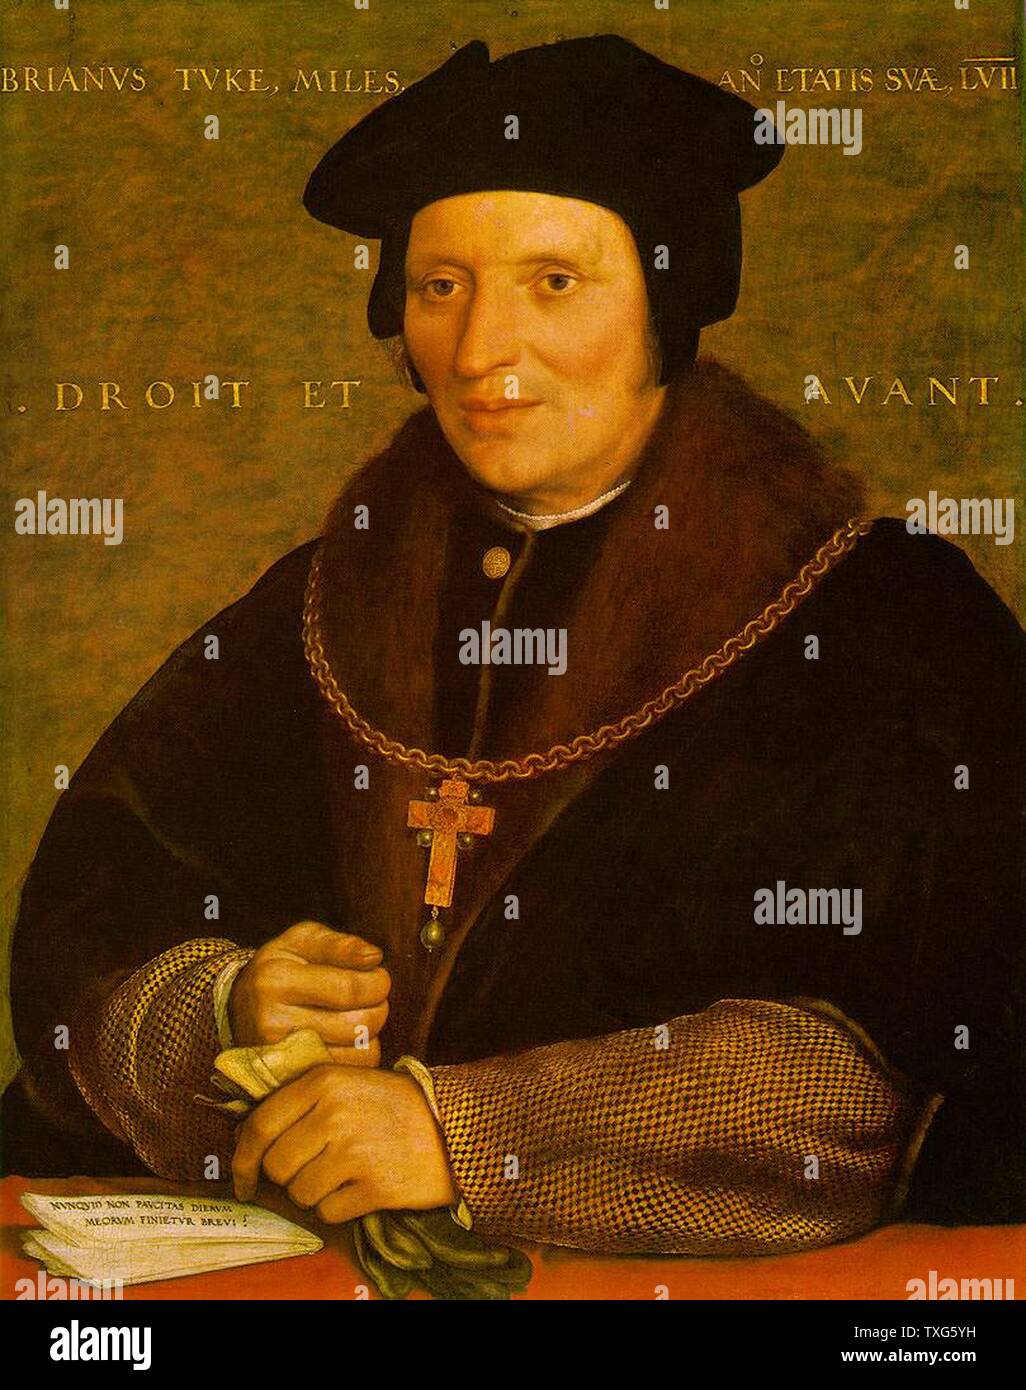 Hans Holbein le Jeune Portrait de Sir Brian Tuke, trésorier et secrétaire d'Henry VIII d'Angleterre Huile sur panneau Banque D'Images